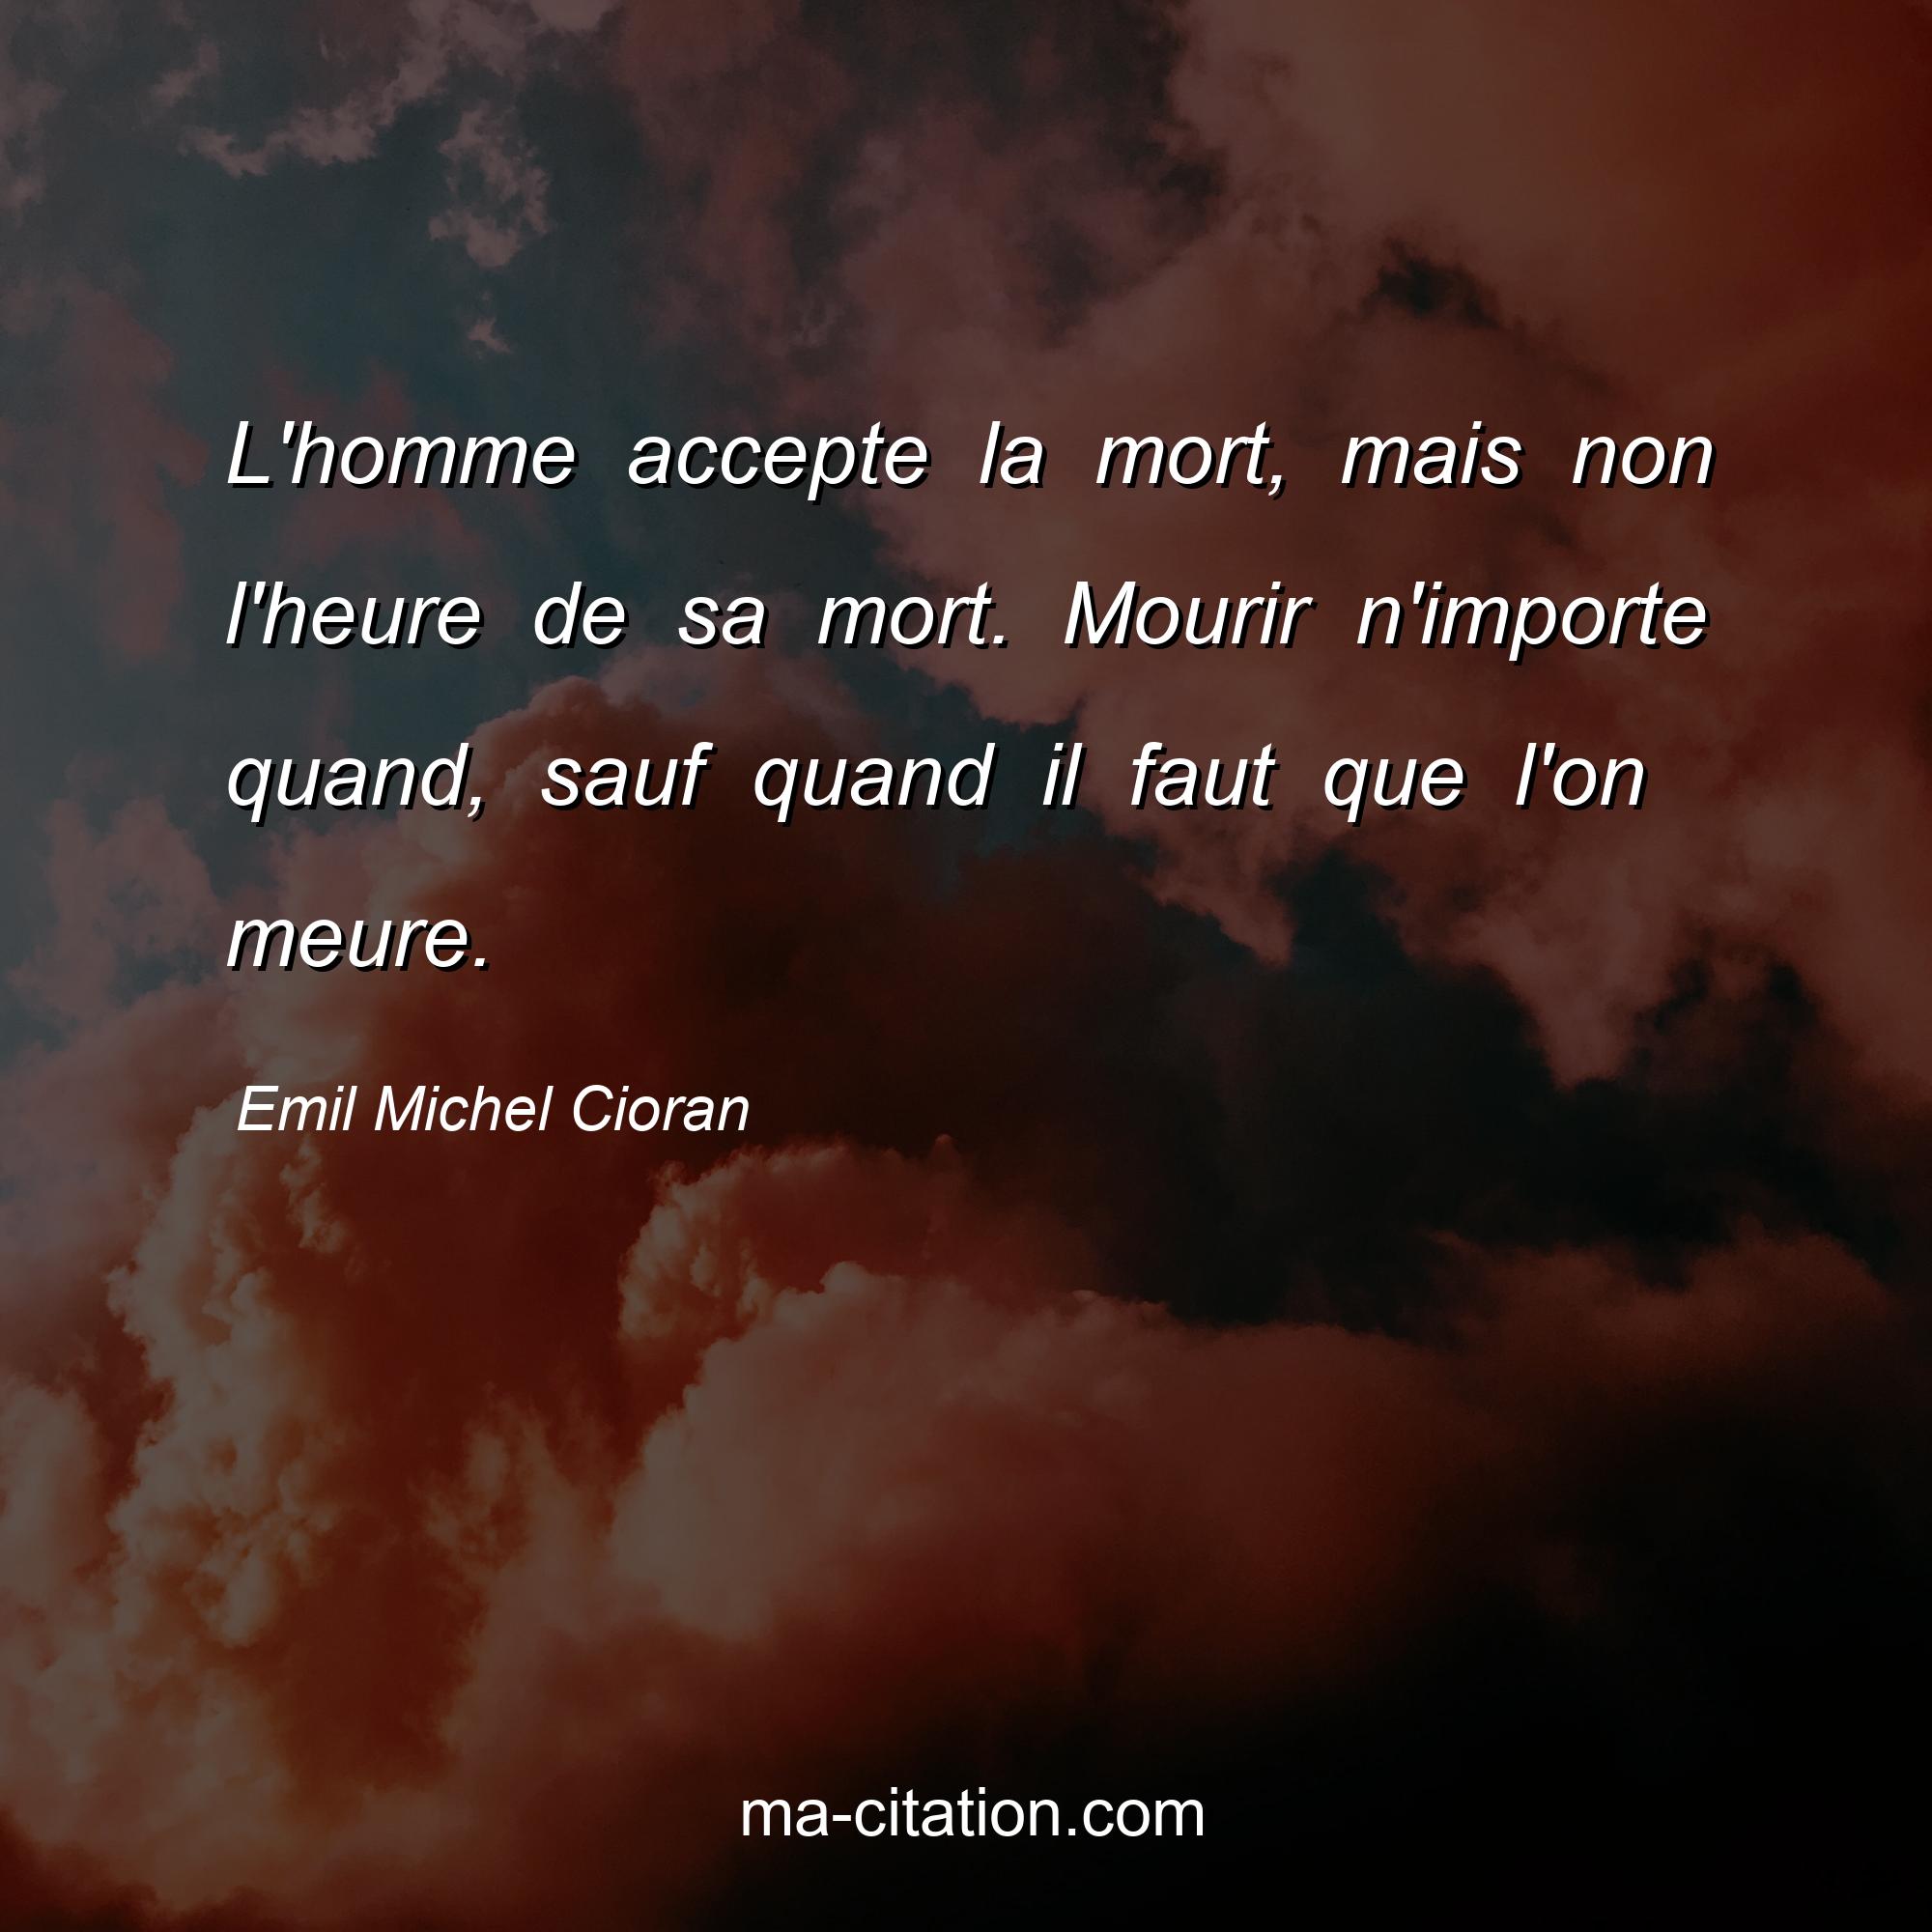 Emil Michel Cioran : L'homme accepte la mort, mais non l'heure de sa mort. Mourir n'importe quand, sauf quand il faut que l'on meure.